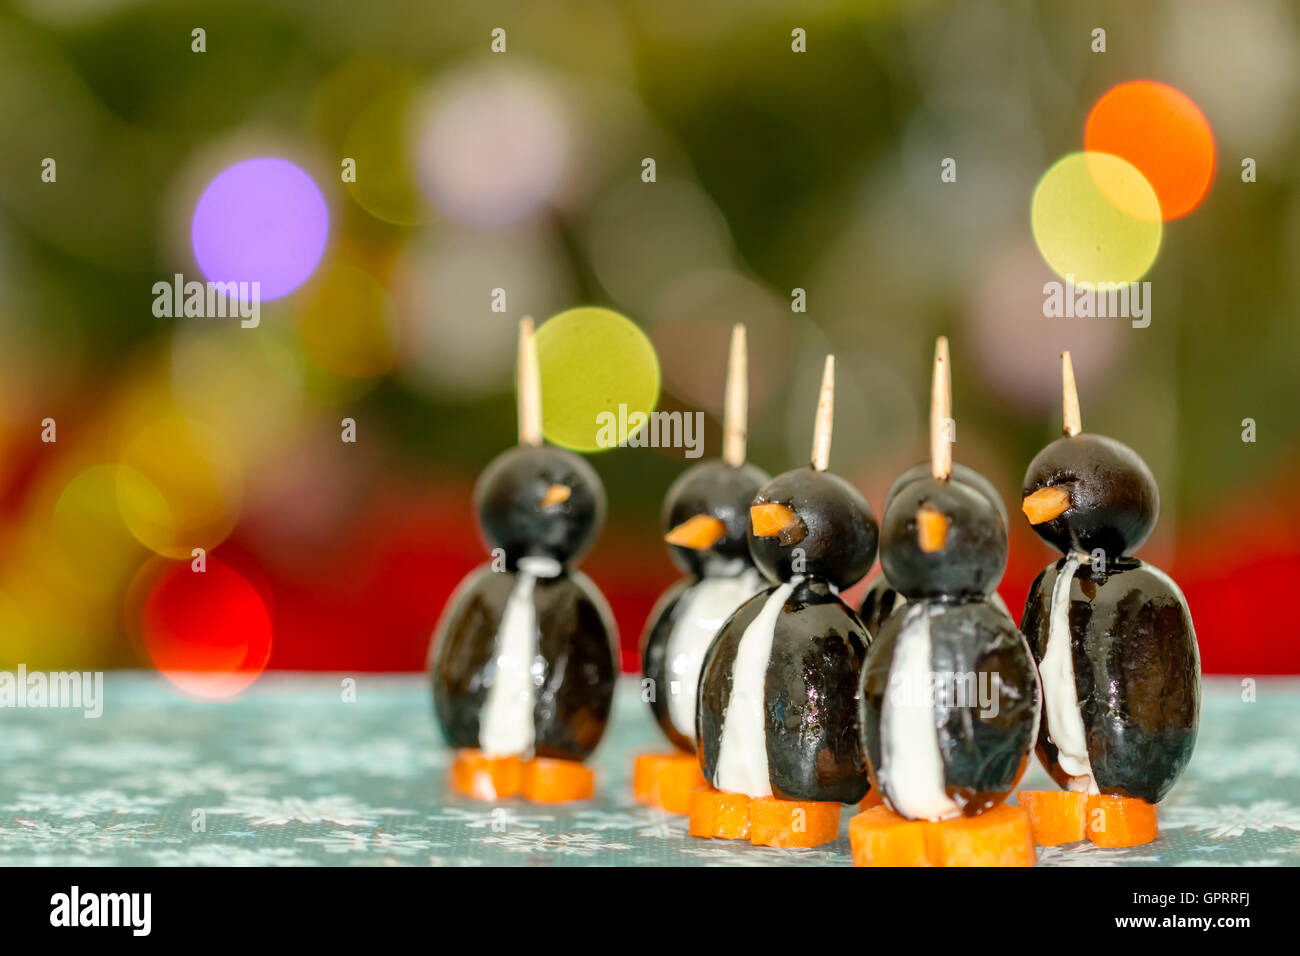 lustig aussehende Pinguine mit Oliven, Käse und Karotten Stockfoto